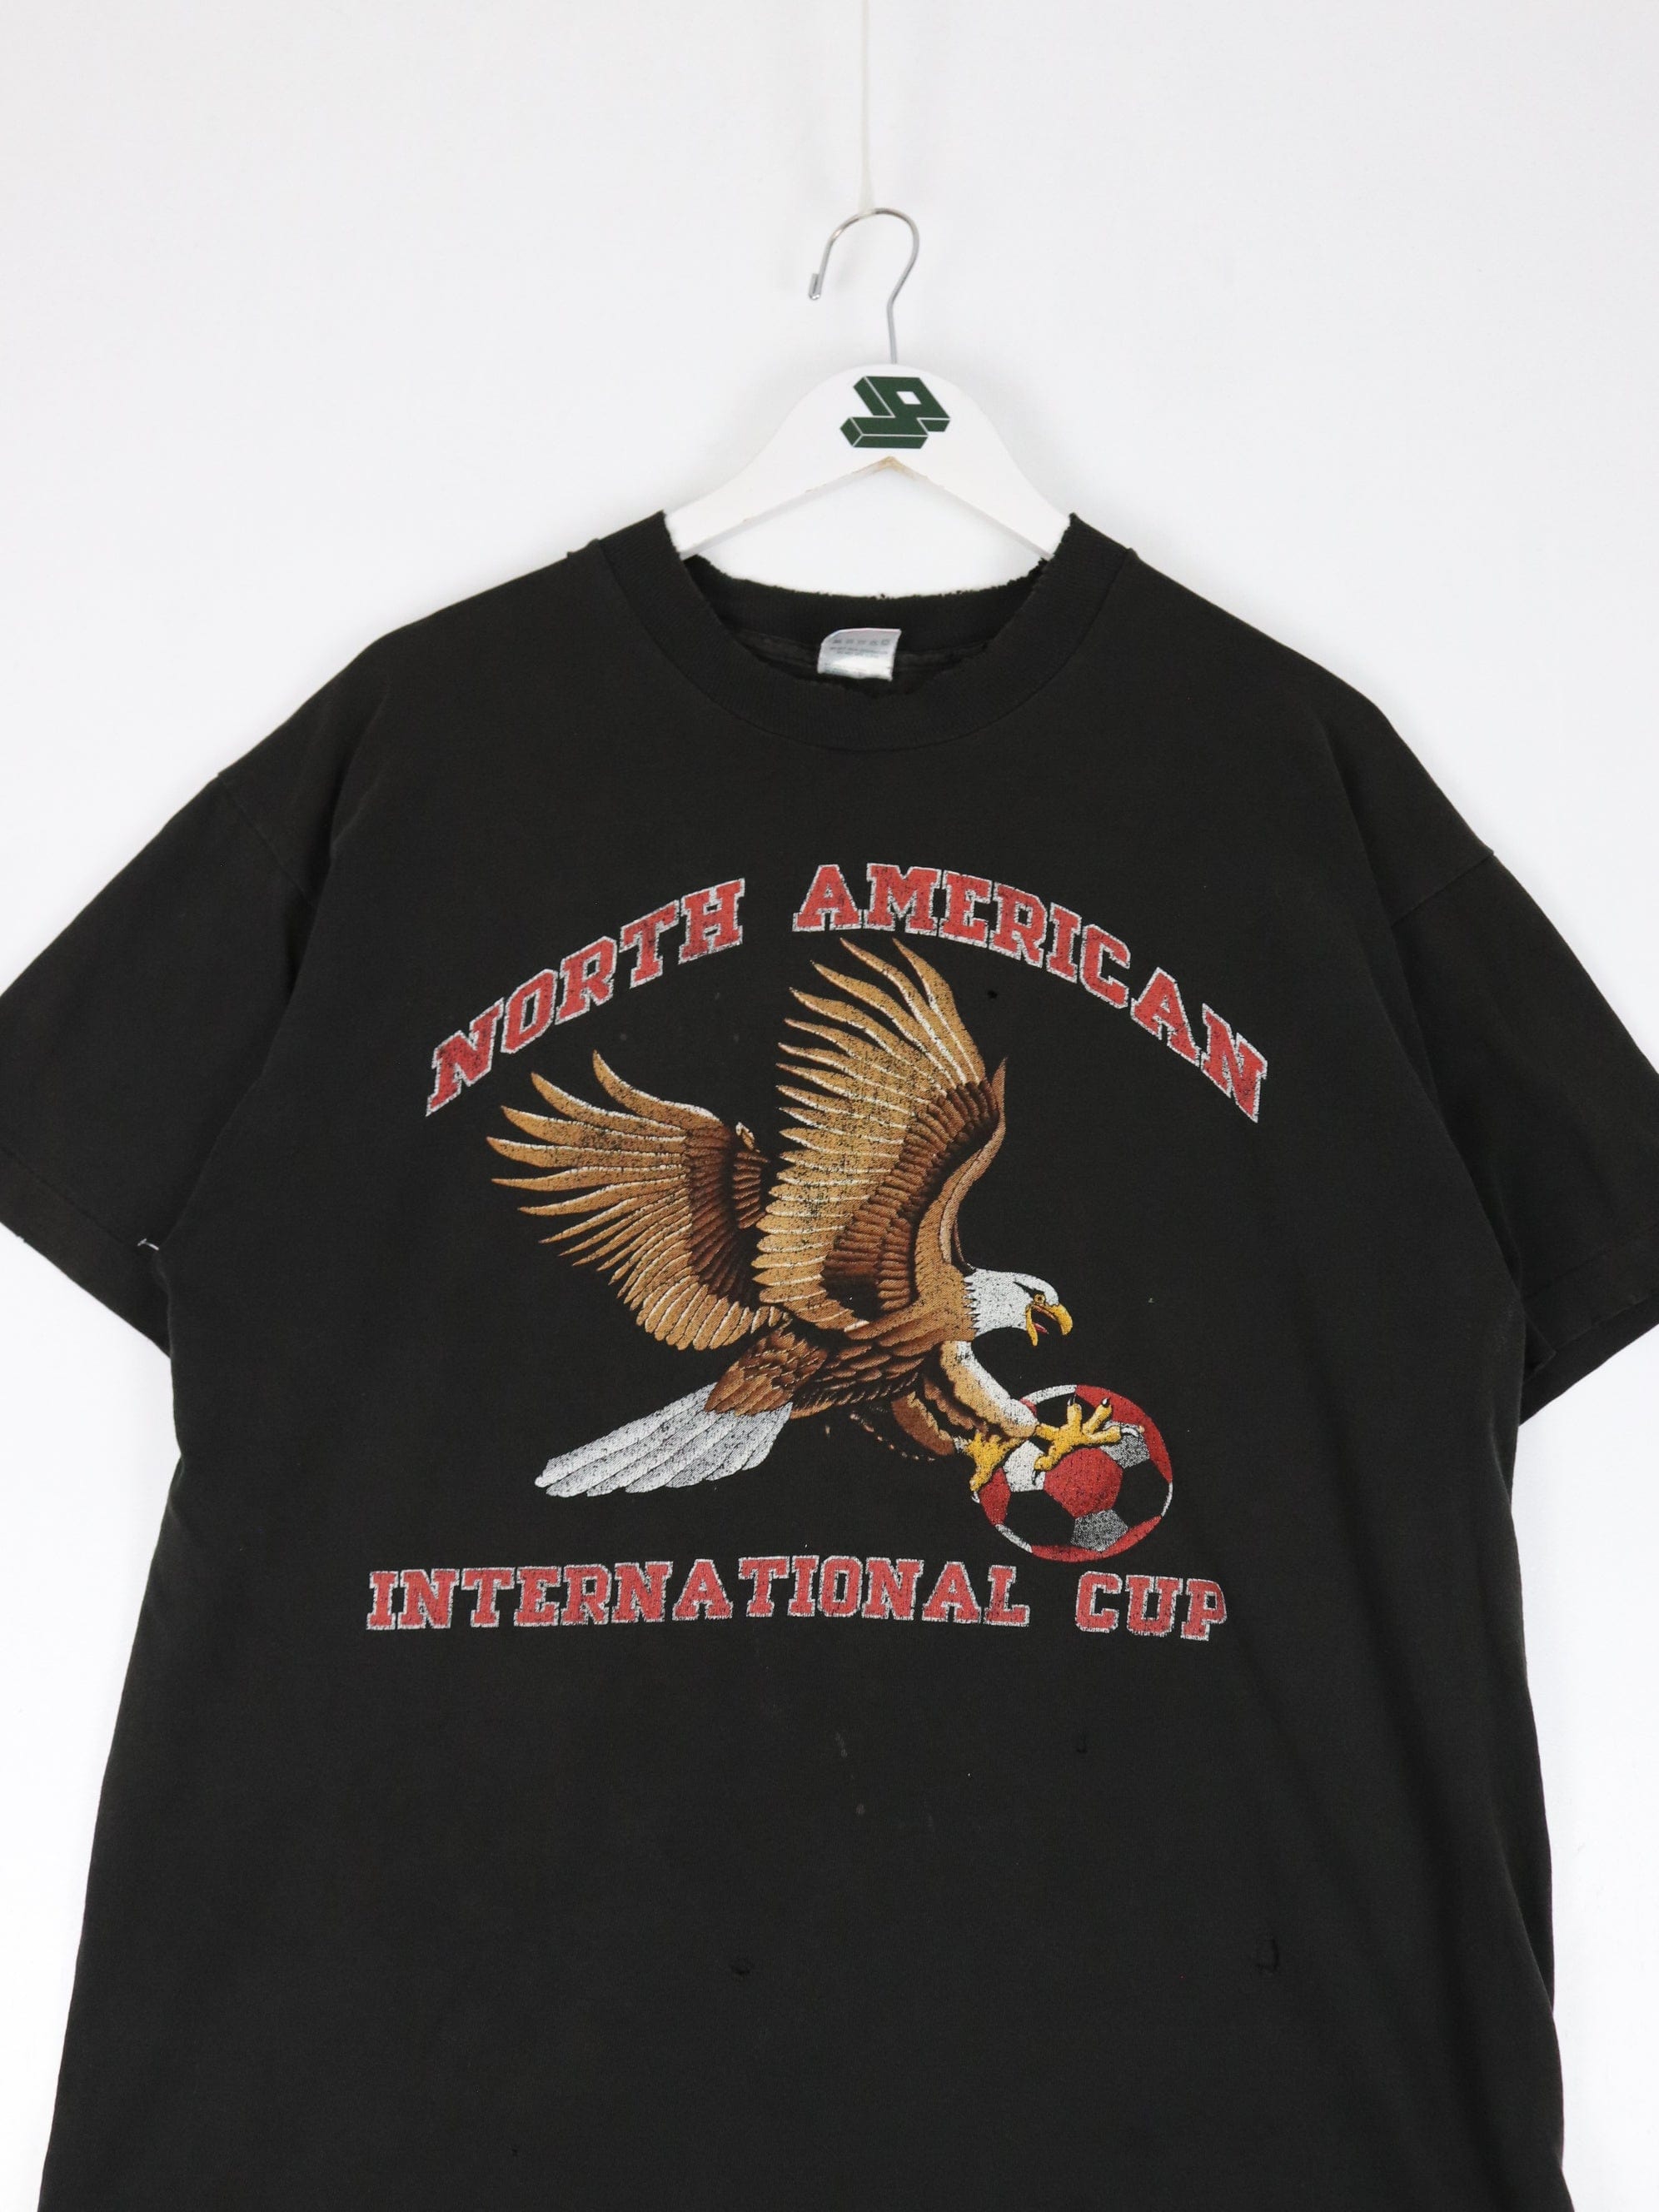 Vintage North American International Cup T Shirt Mens XL Black Soccer –  Proper Vintage